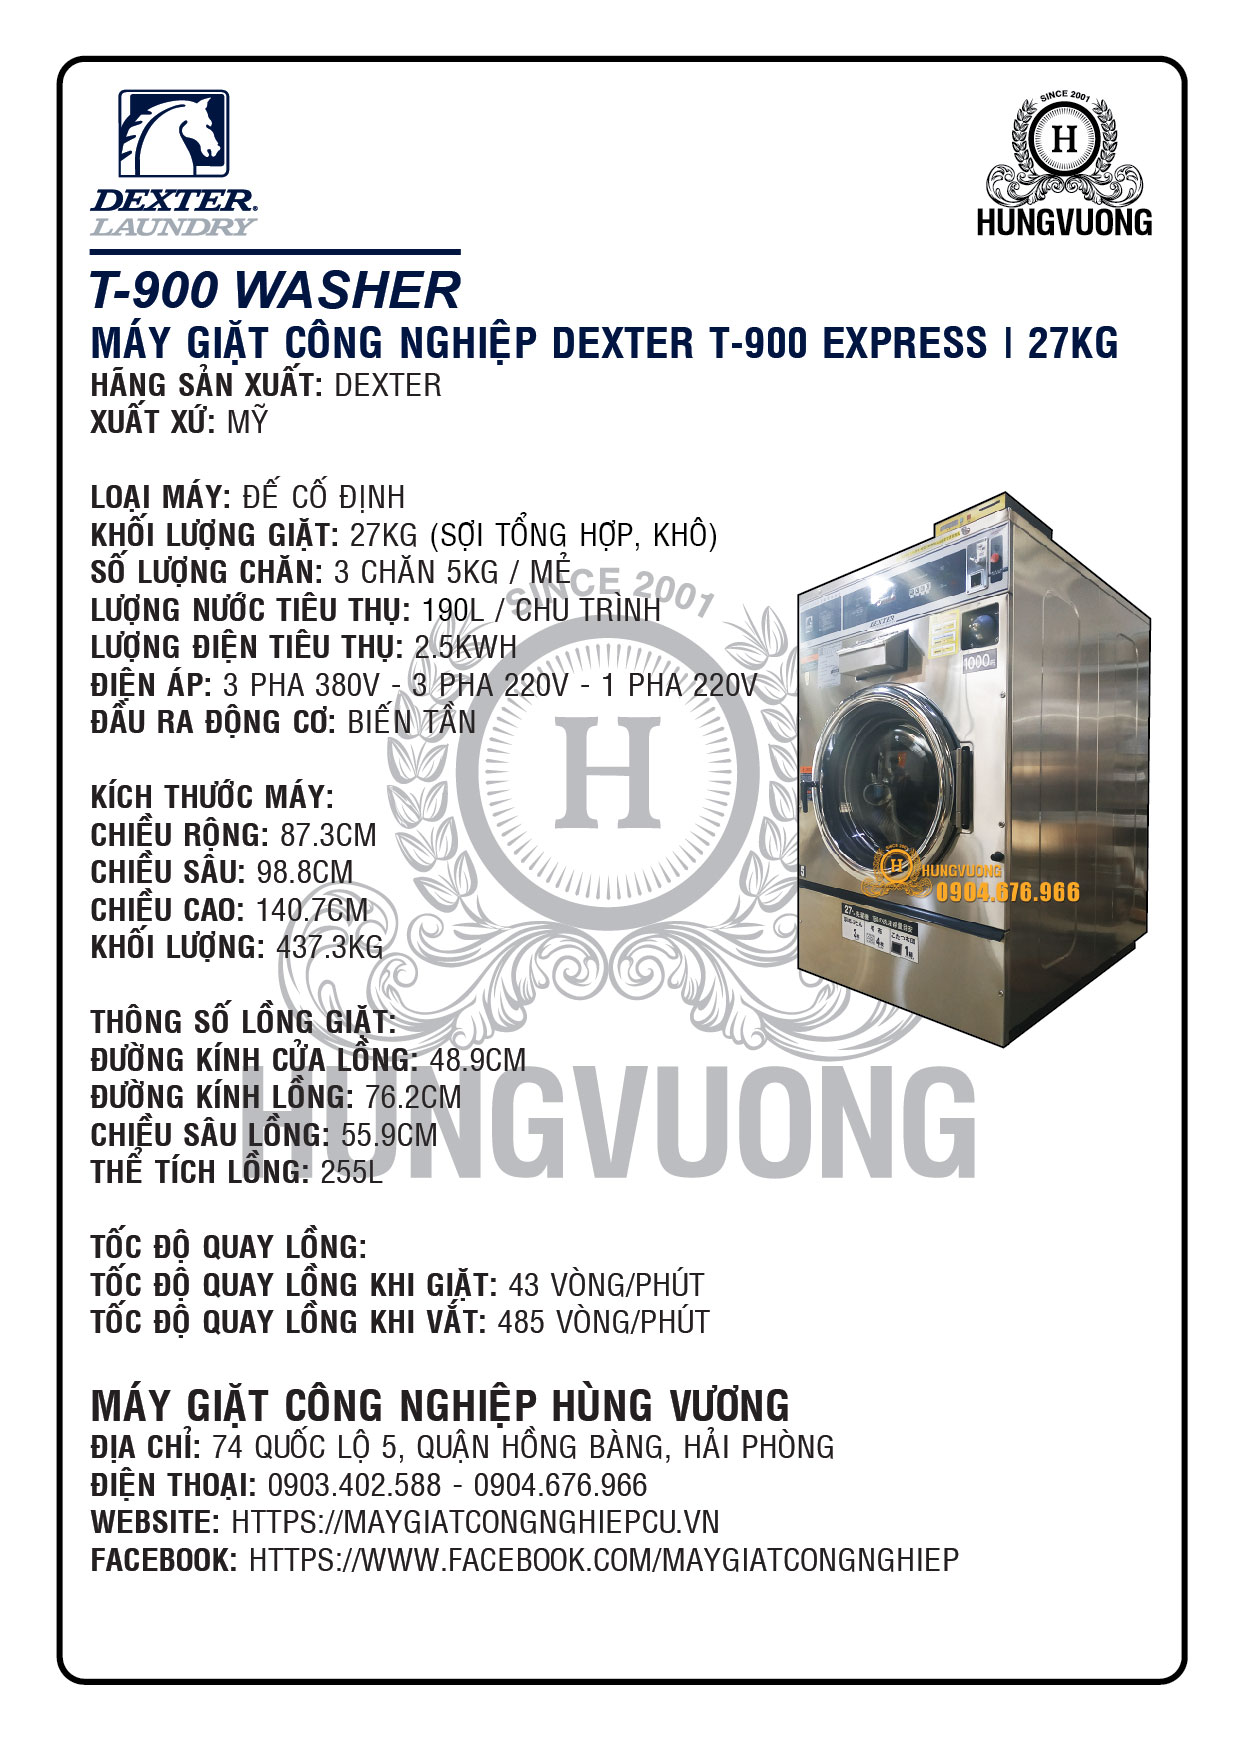 Thông số kỹ thuật máy giặt công nghiệp DEXTER T-900 27kg, chân cố định, biến tần, Mỹ